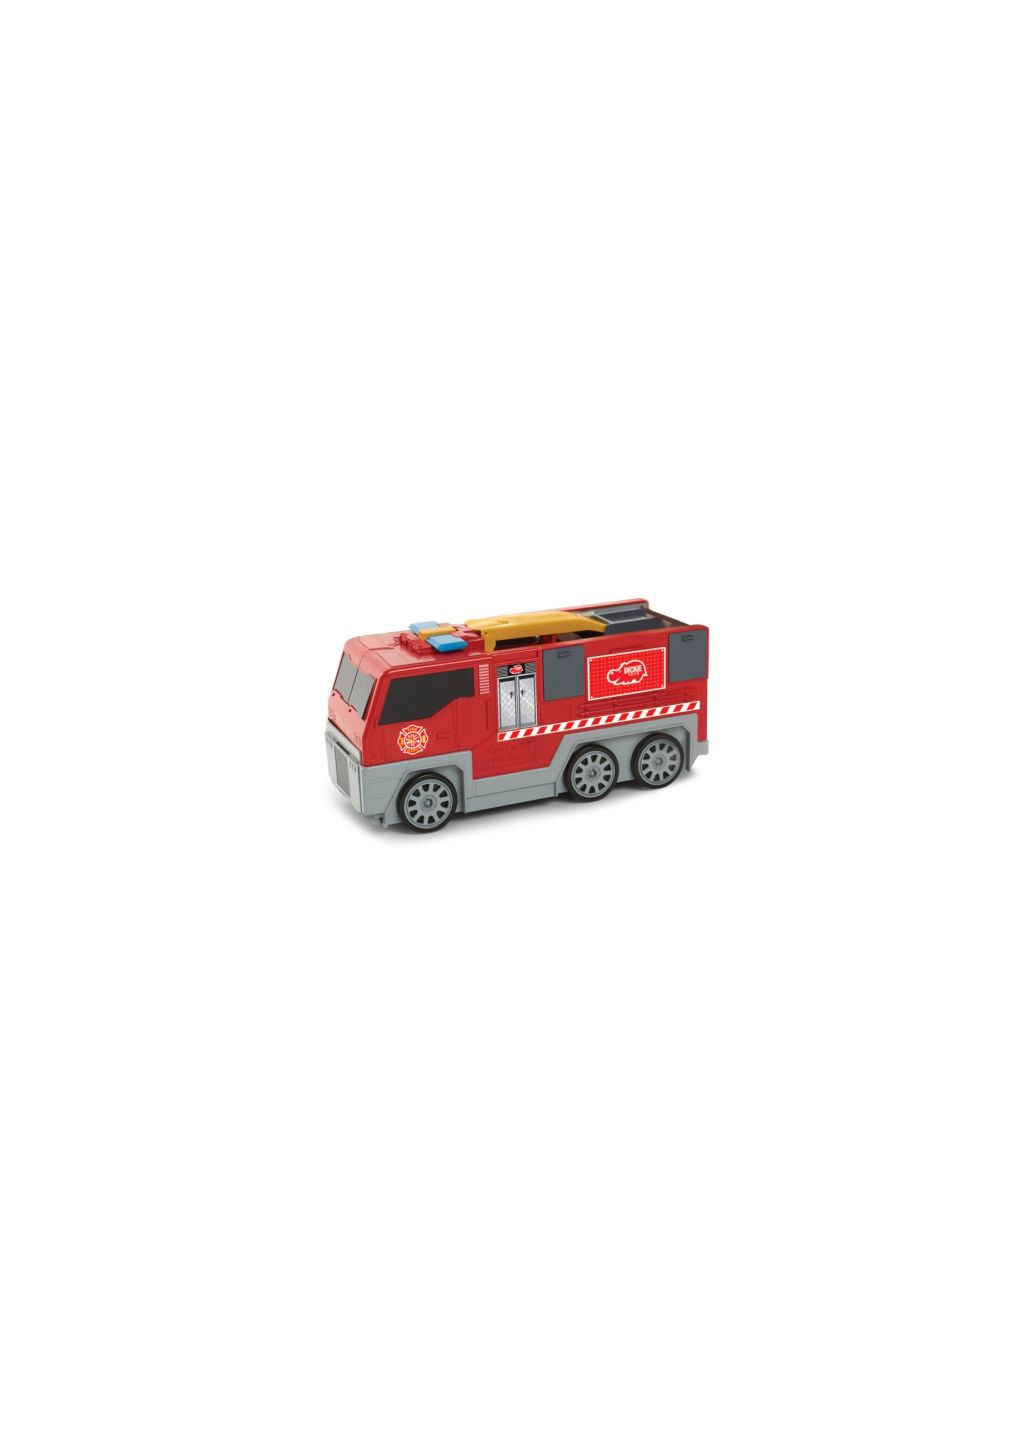 Игровой набор 2 в 1 Пожарная машина. Разверни город (3719005) Dickie toys 2 в 1 пожежна машина. розгорни місто (275456725)